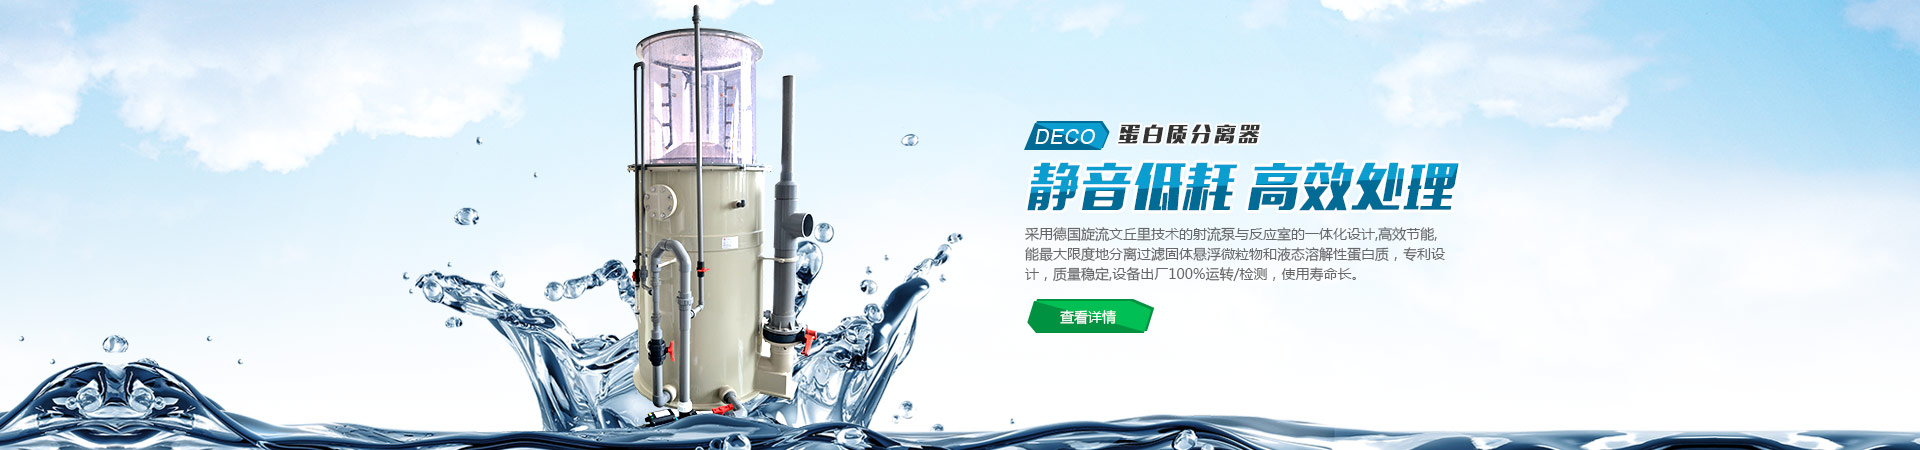 史陶比尔杭州精密机械电子有限公司